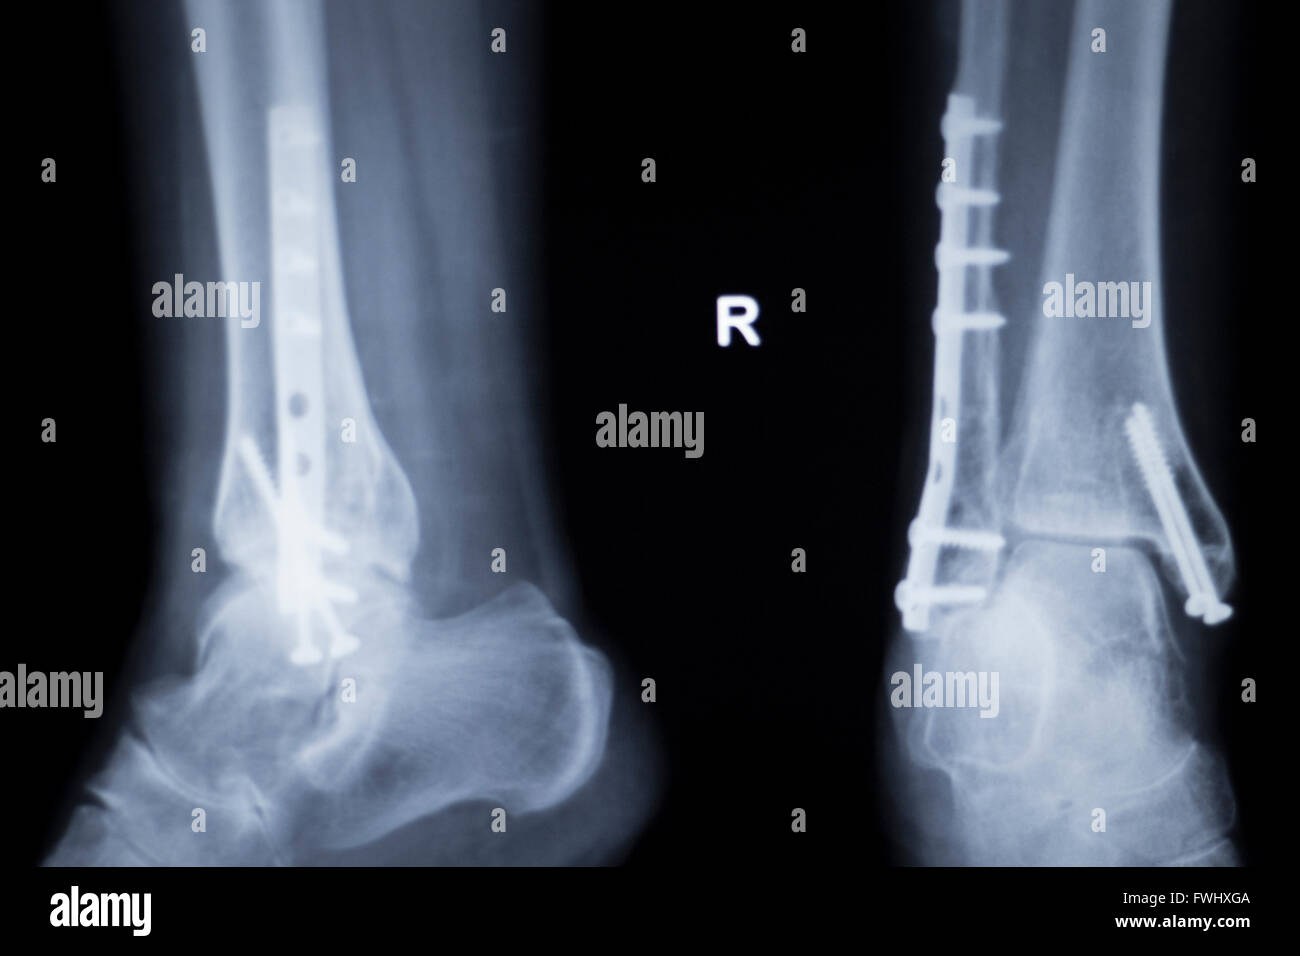 Knöchel und Bein Verletzungen medizinische Röntgen-Scan Testergebnis für  Erwachsene zeigt orthopädische Traumatologie Titan Metallplatte und  Schrauben-Implantat-Bild Stockfotografie - Alamy